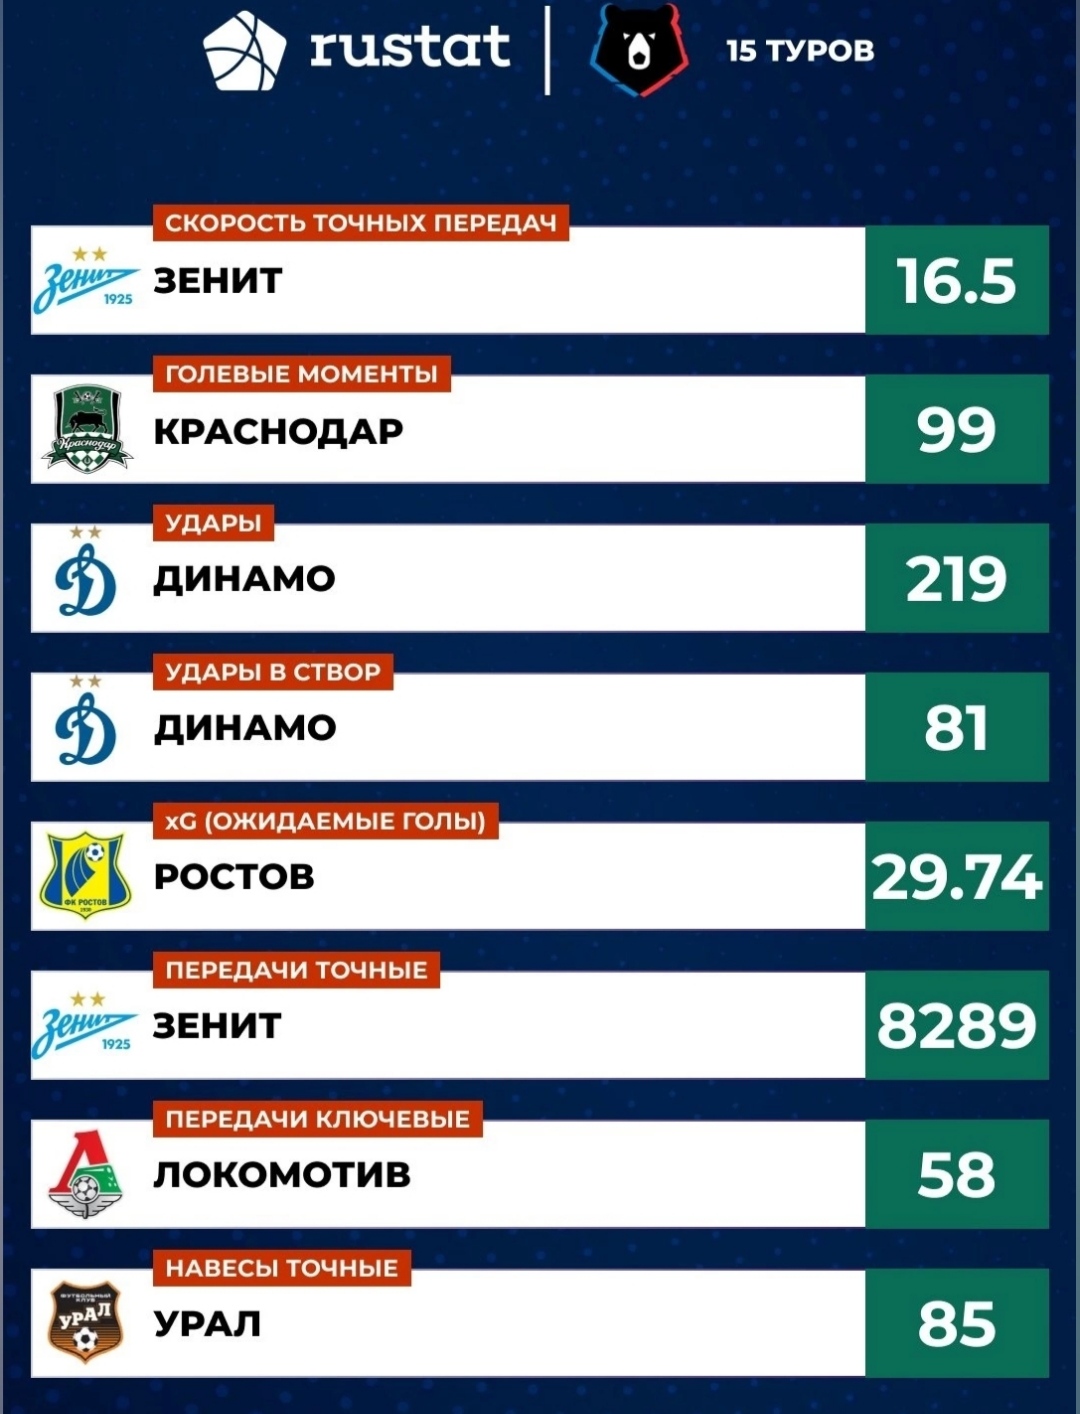 Топ лучших команд по итогам первого круга Мир Российской Премьер-Лиги